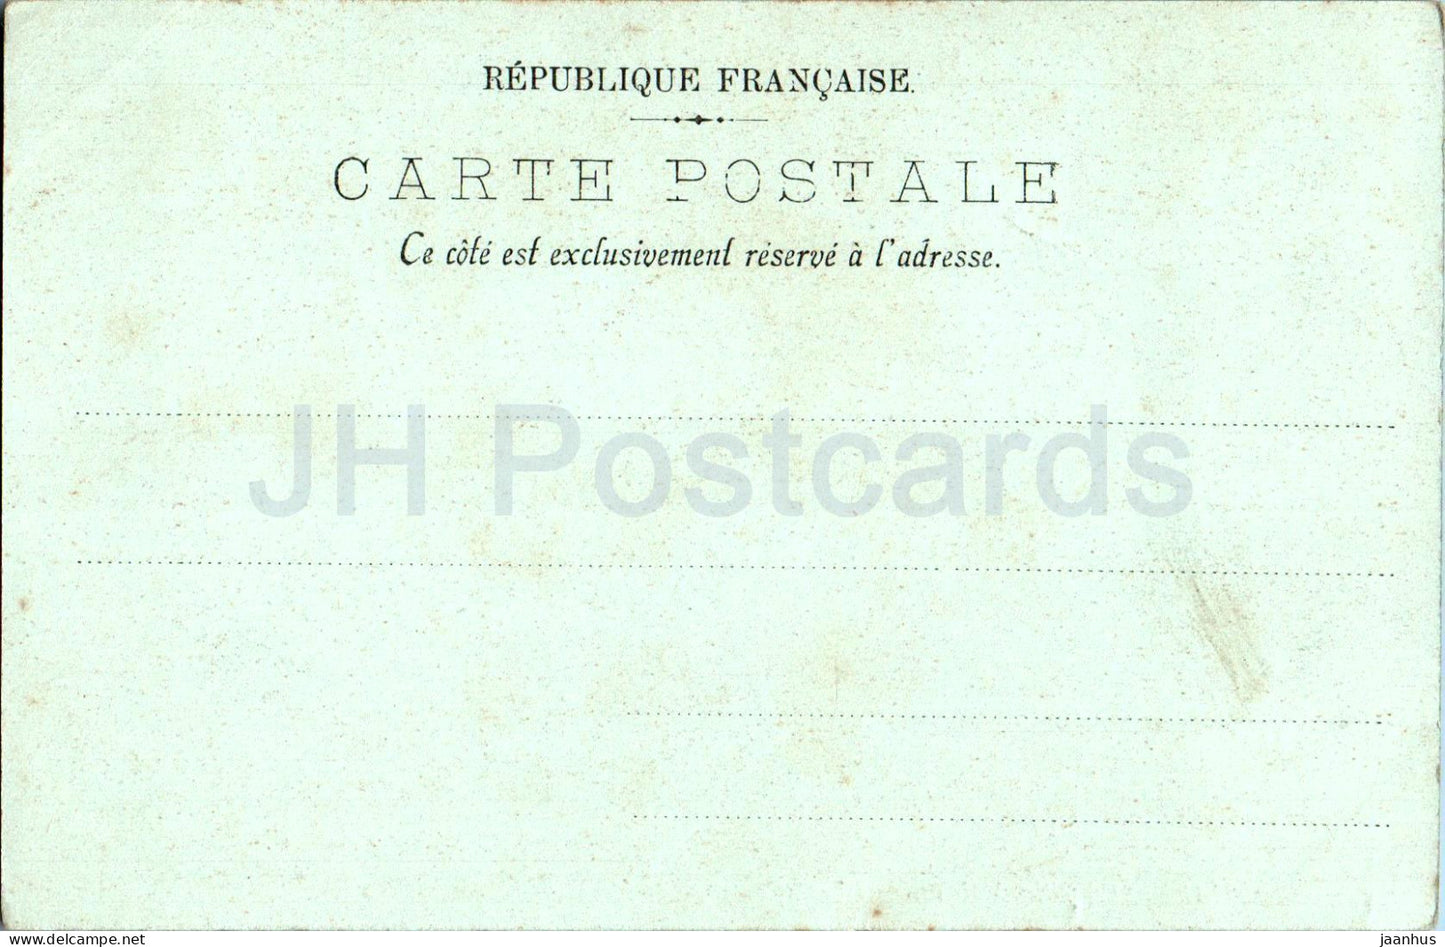 Caen - Vieilles Maisons - alte Häuser - 11 - alte Postkarte - Frankreich - unbenutzt 